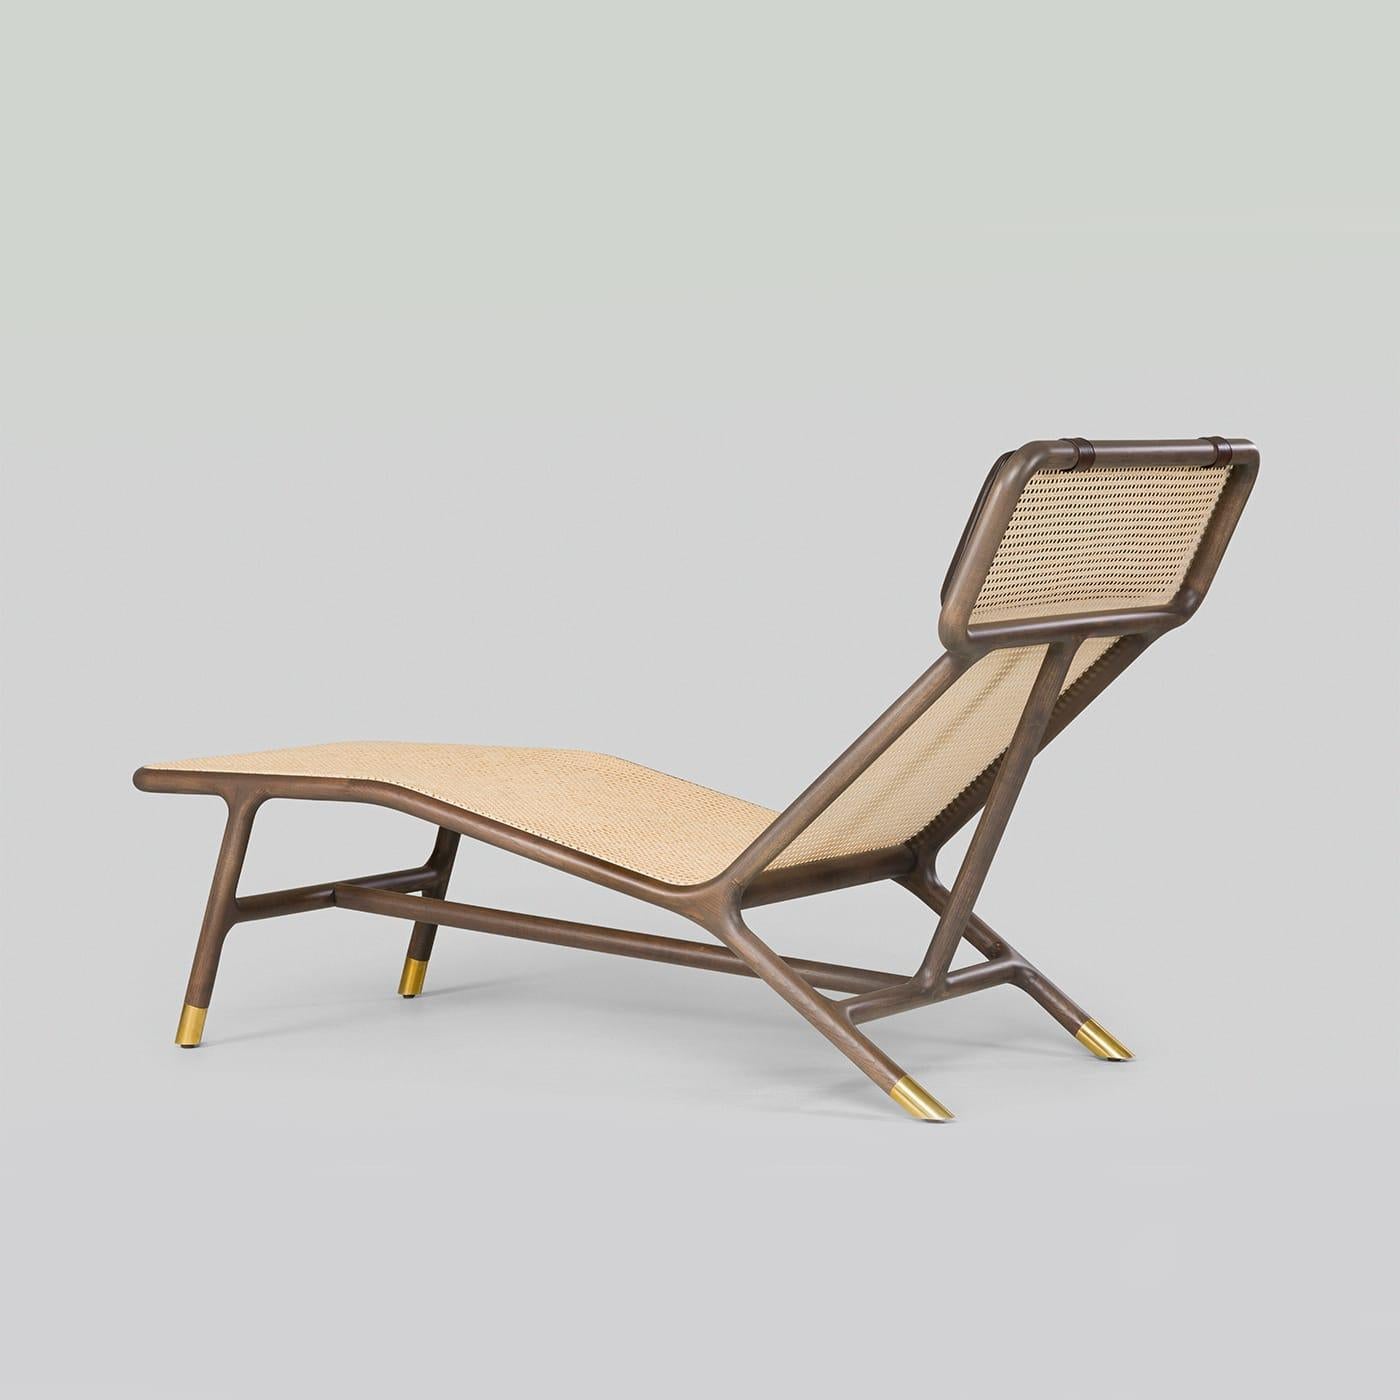 Une version moderne d'un classique intemporel, cette chaise longue raffinée présente une structure élégante en frêne marron avec des pieds détaillés en laiton et une assise emblématique en paille de Vienne. L'appui-tête est rehaussé par un coussin